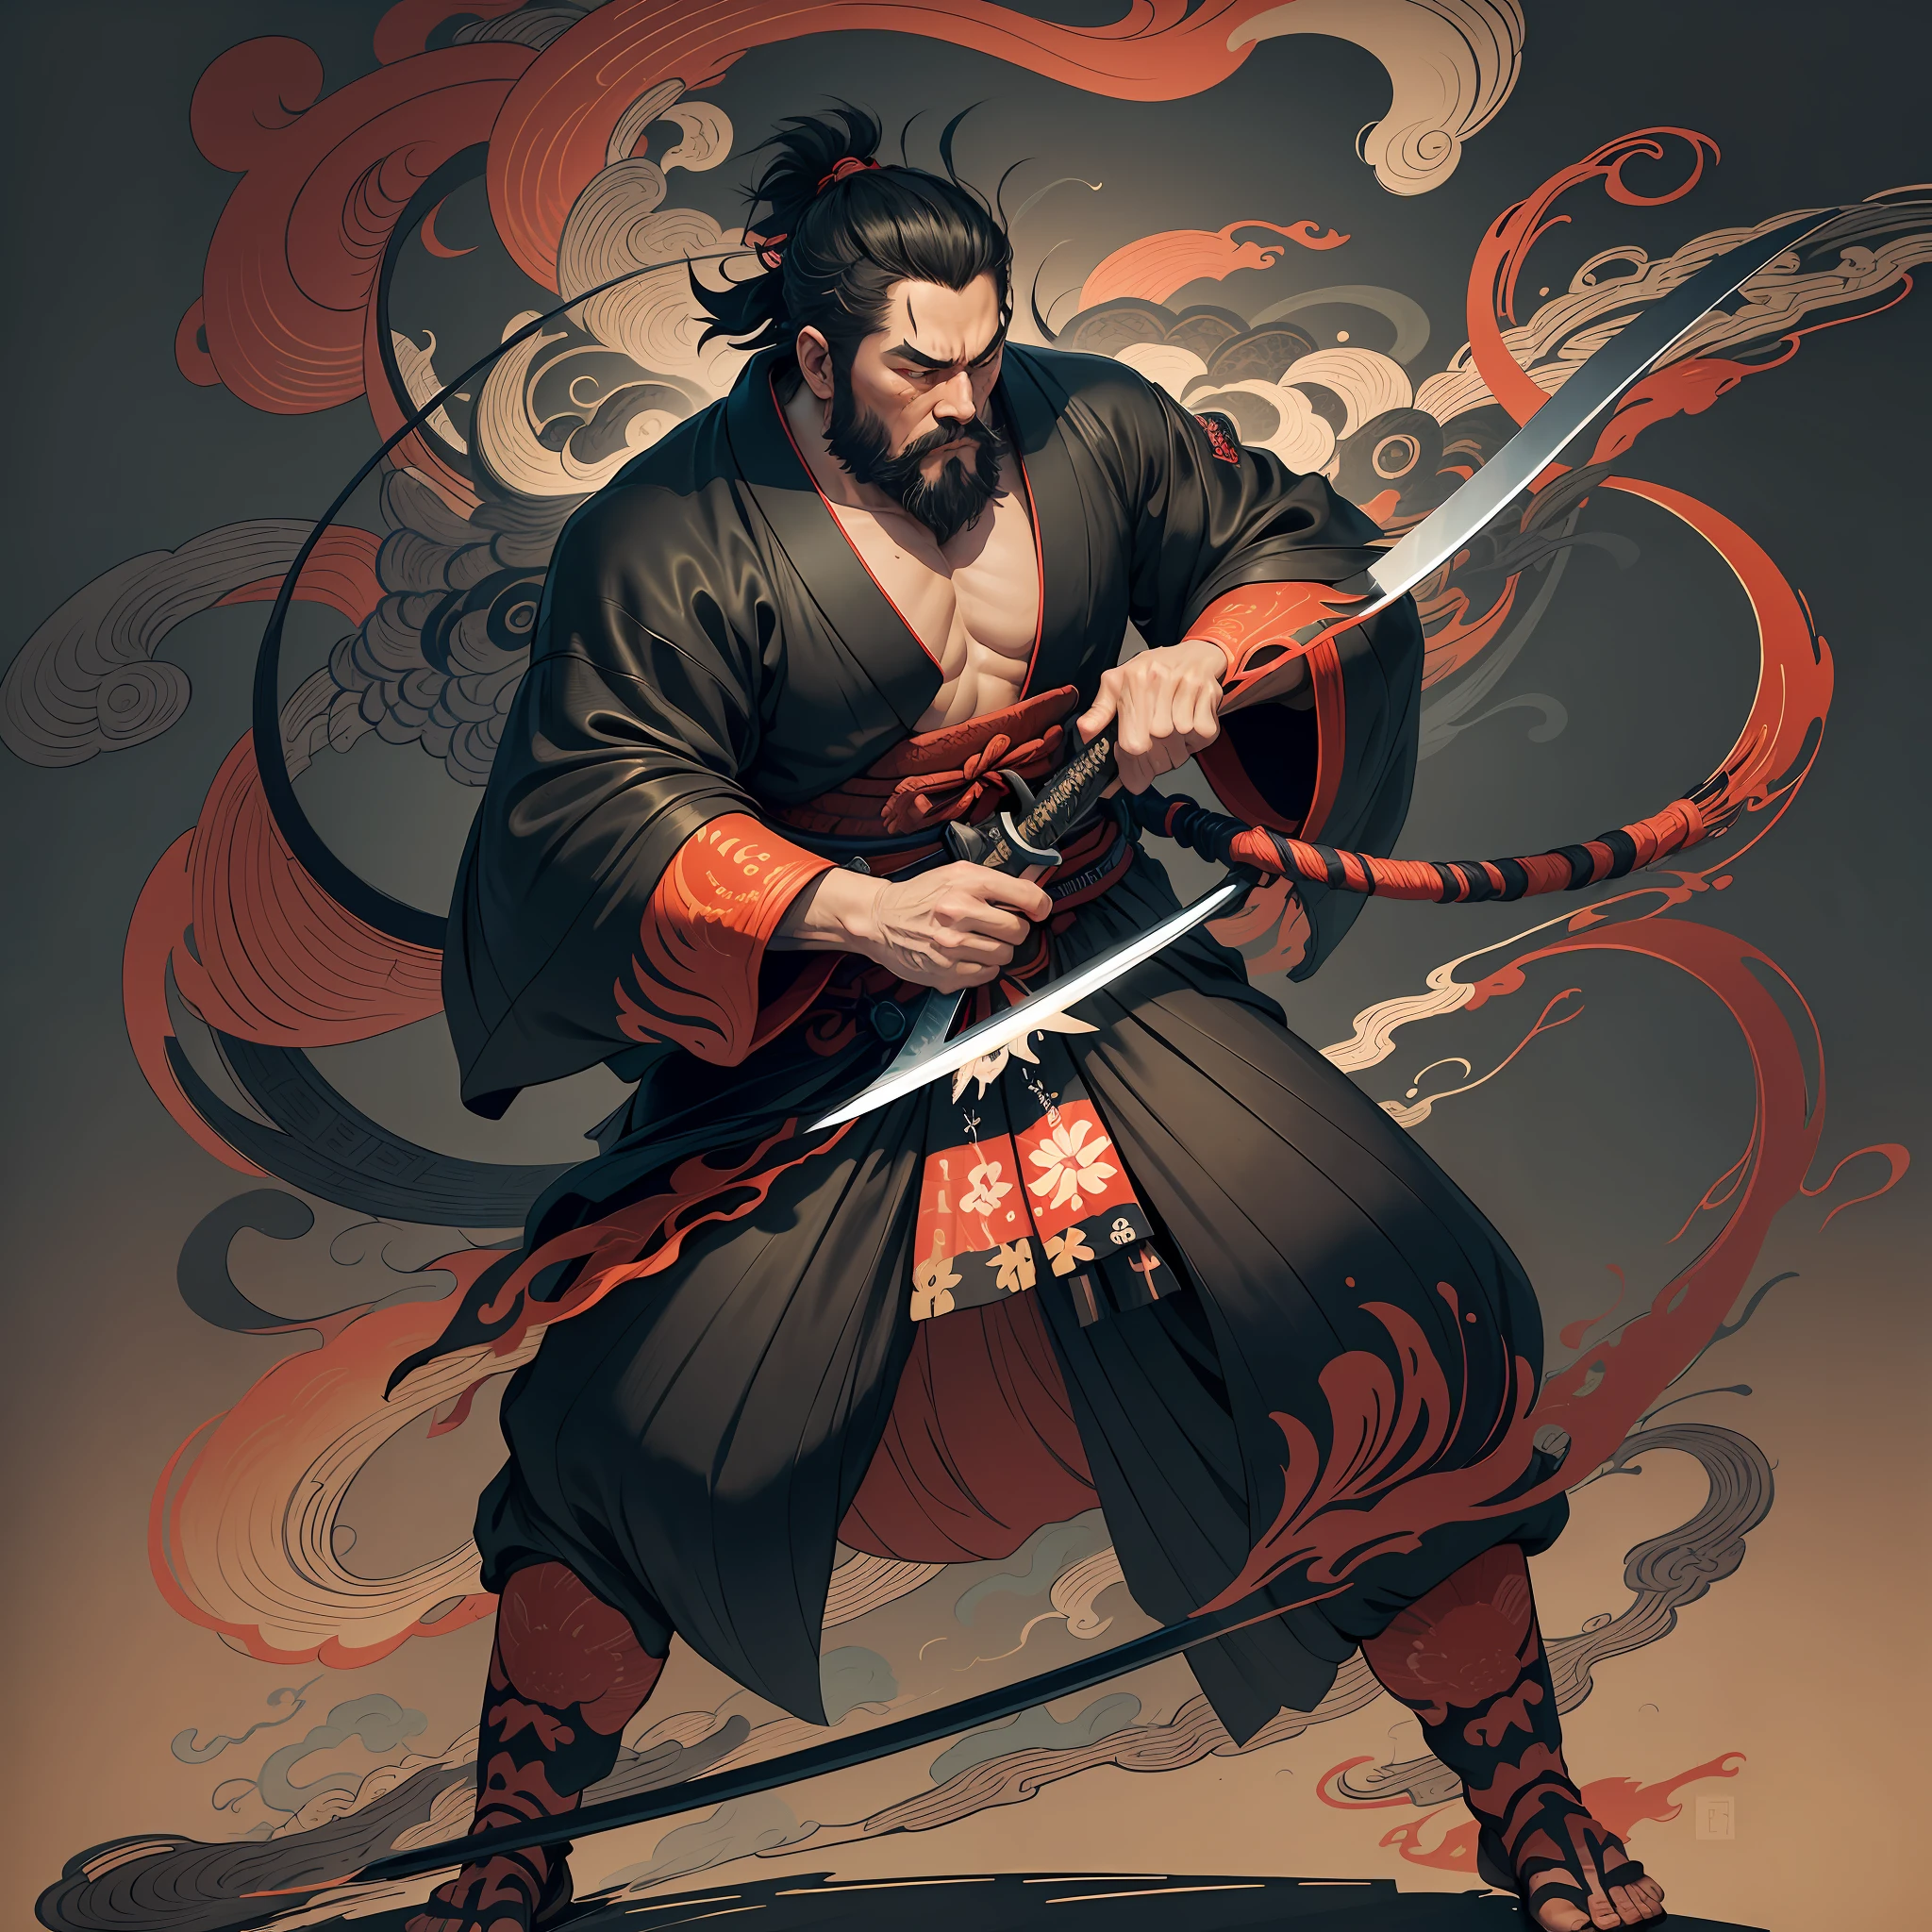 这是一幅浮世绘风格的全身画，色彩自然. 宫本武藏是日本的武士，身材高大，像大力士. 他长着一张粗糙的脸, 黑色短发, 和简短的, 修剪胡须. 他是一位与邪恶斗争的正义武士. 他穿着黑色和服. 袴要稍长一些，画成随风飘扬的流动形状. 他右手握着一把剑，日本刀上冒着火焰. 背景是葛饰北斋风格的旋转火焰. 高清浮世绘风格的杰作, 最高质量 --auto --s2